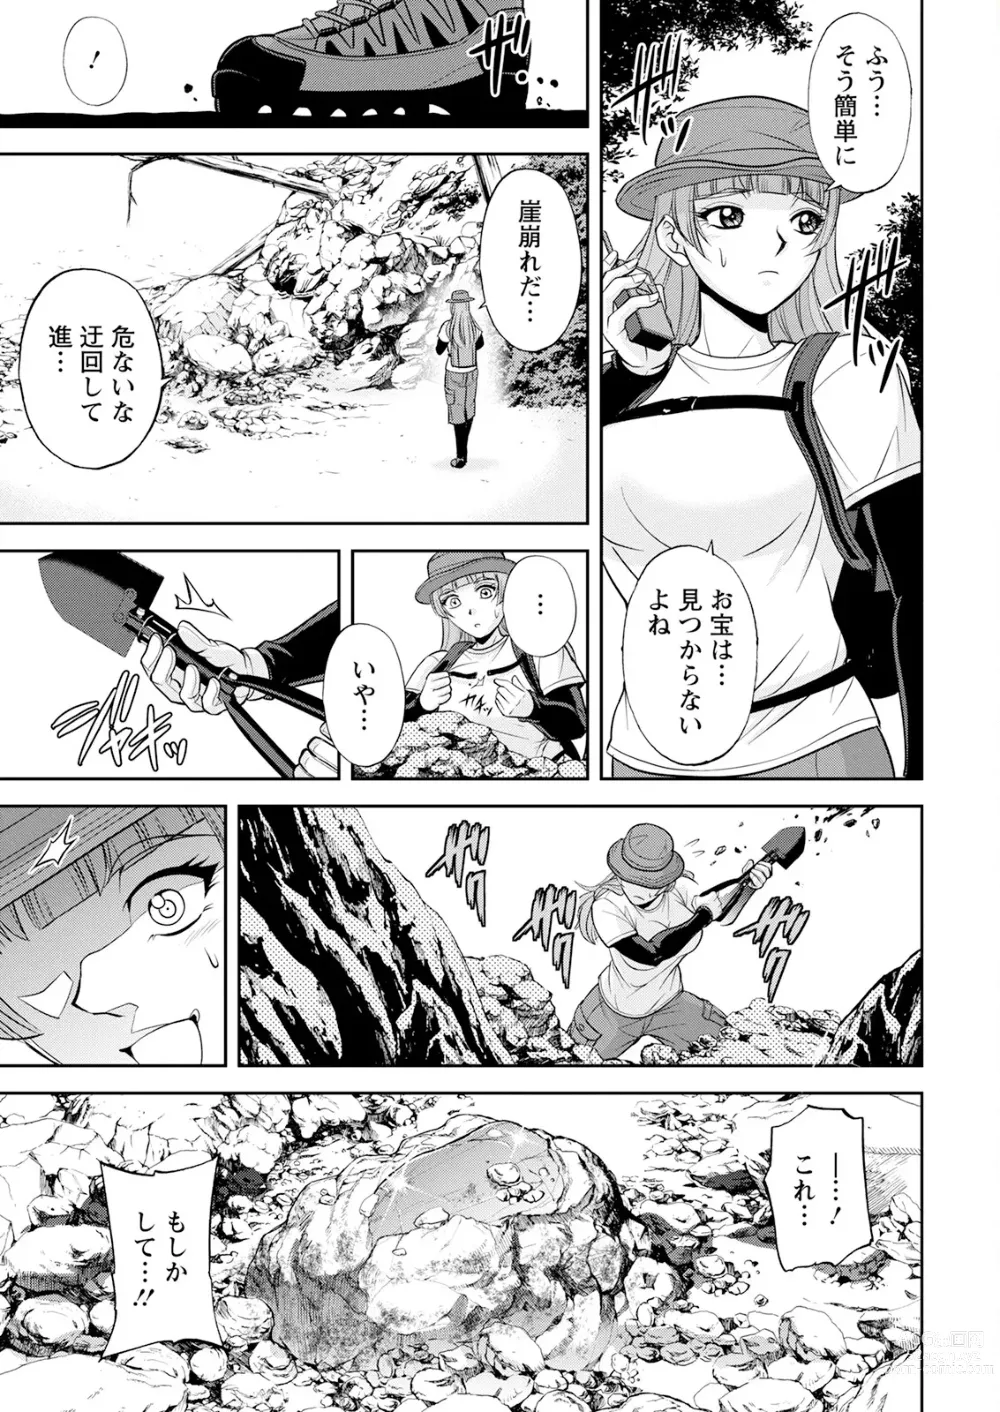 Page 13 of manga Action Pizazz 2023-08